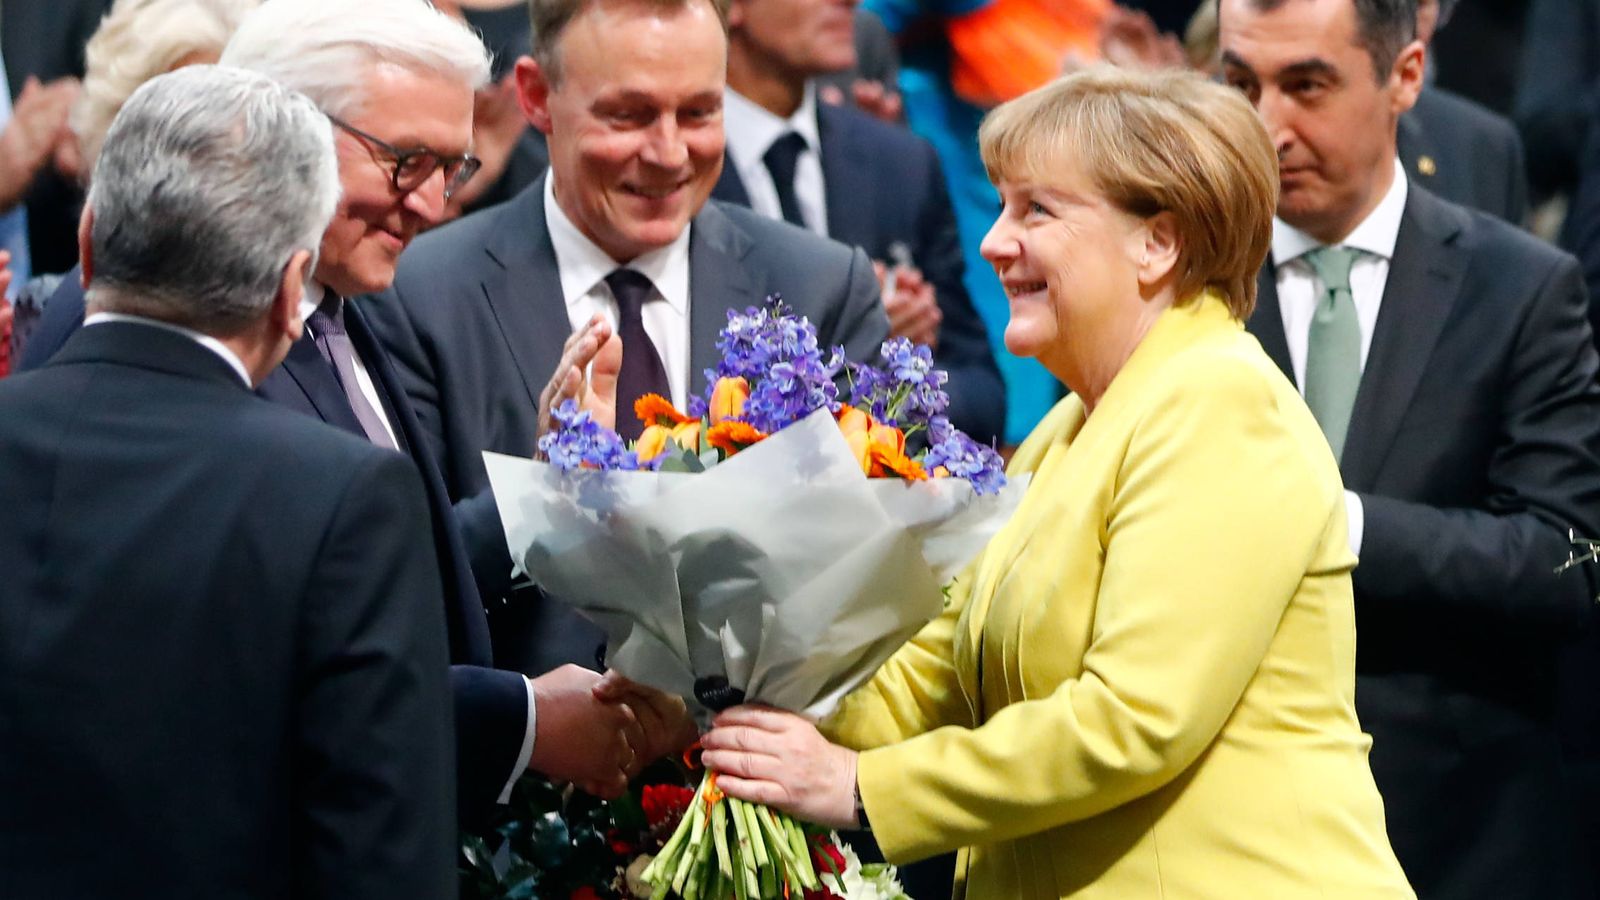 Foto: Frank-Walter Steinmeier es felicitado por Angela Merkel tras su elección como presidente en el Reichstag, Berlín (Reuters). 